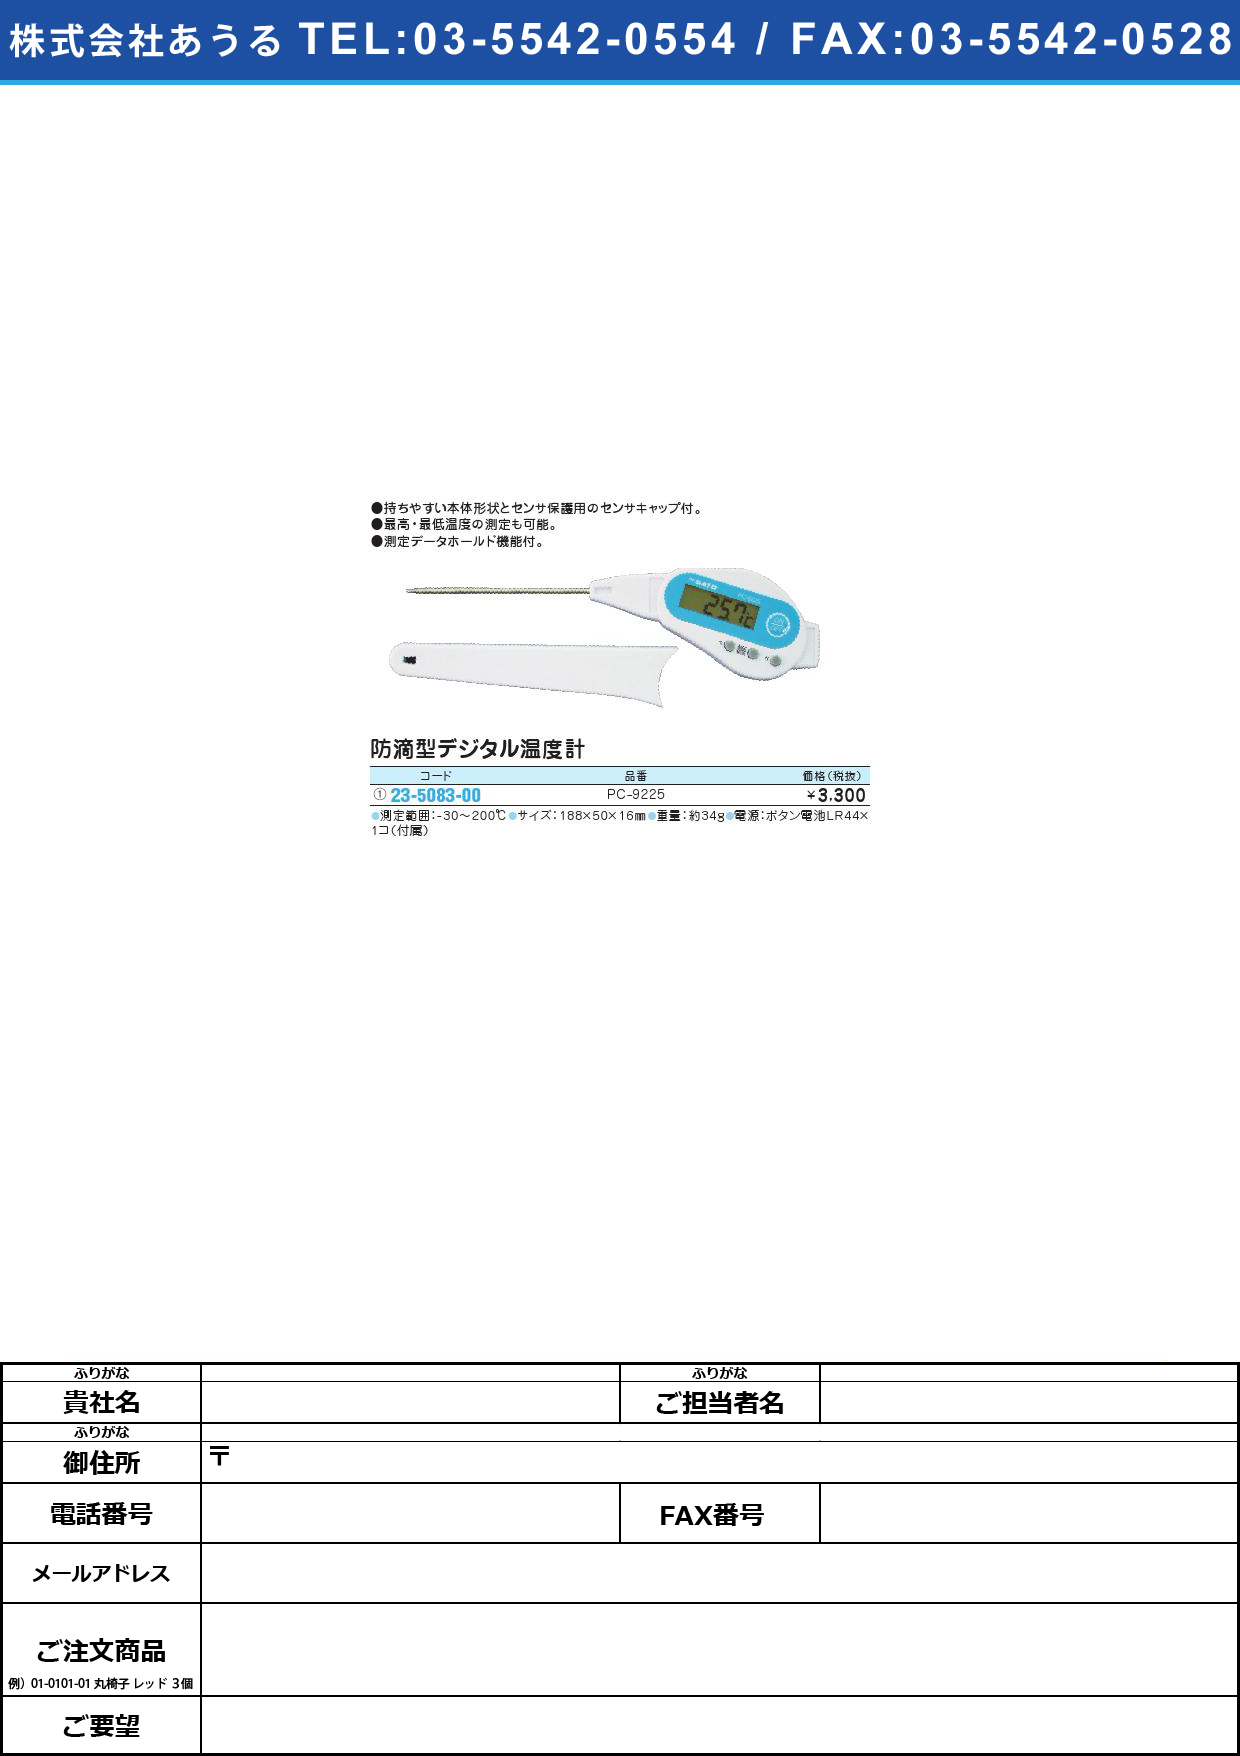 (23-5083-00)防滴型デジタル温度計 PC-9225ﾎﾞｳﾃｷｶﾞﾀﾃﾞｼﾞﾀﾘｵﾝﾄﾞｹｲ(23-5083-00)【1個単位】【2013年カタログ商品】